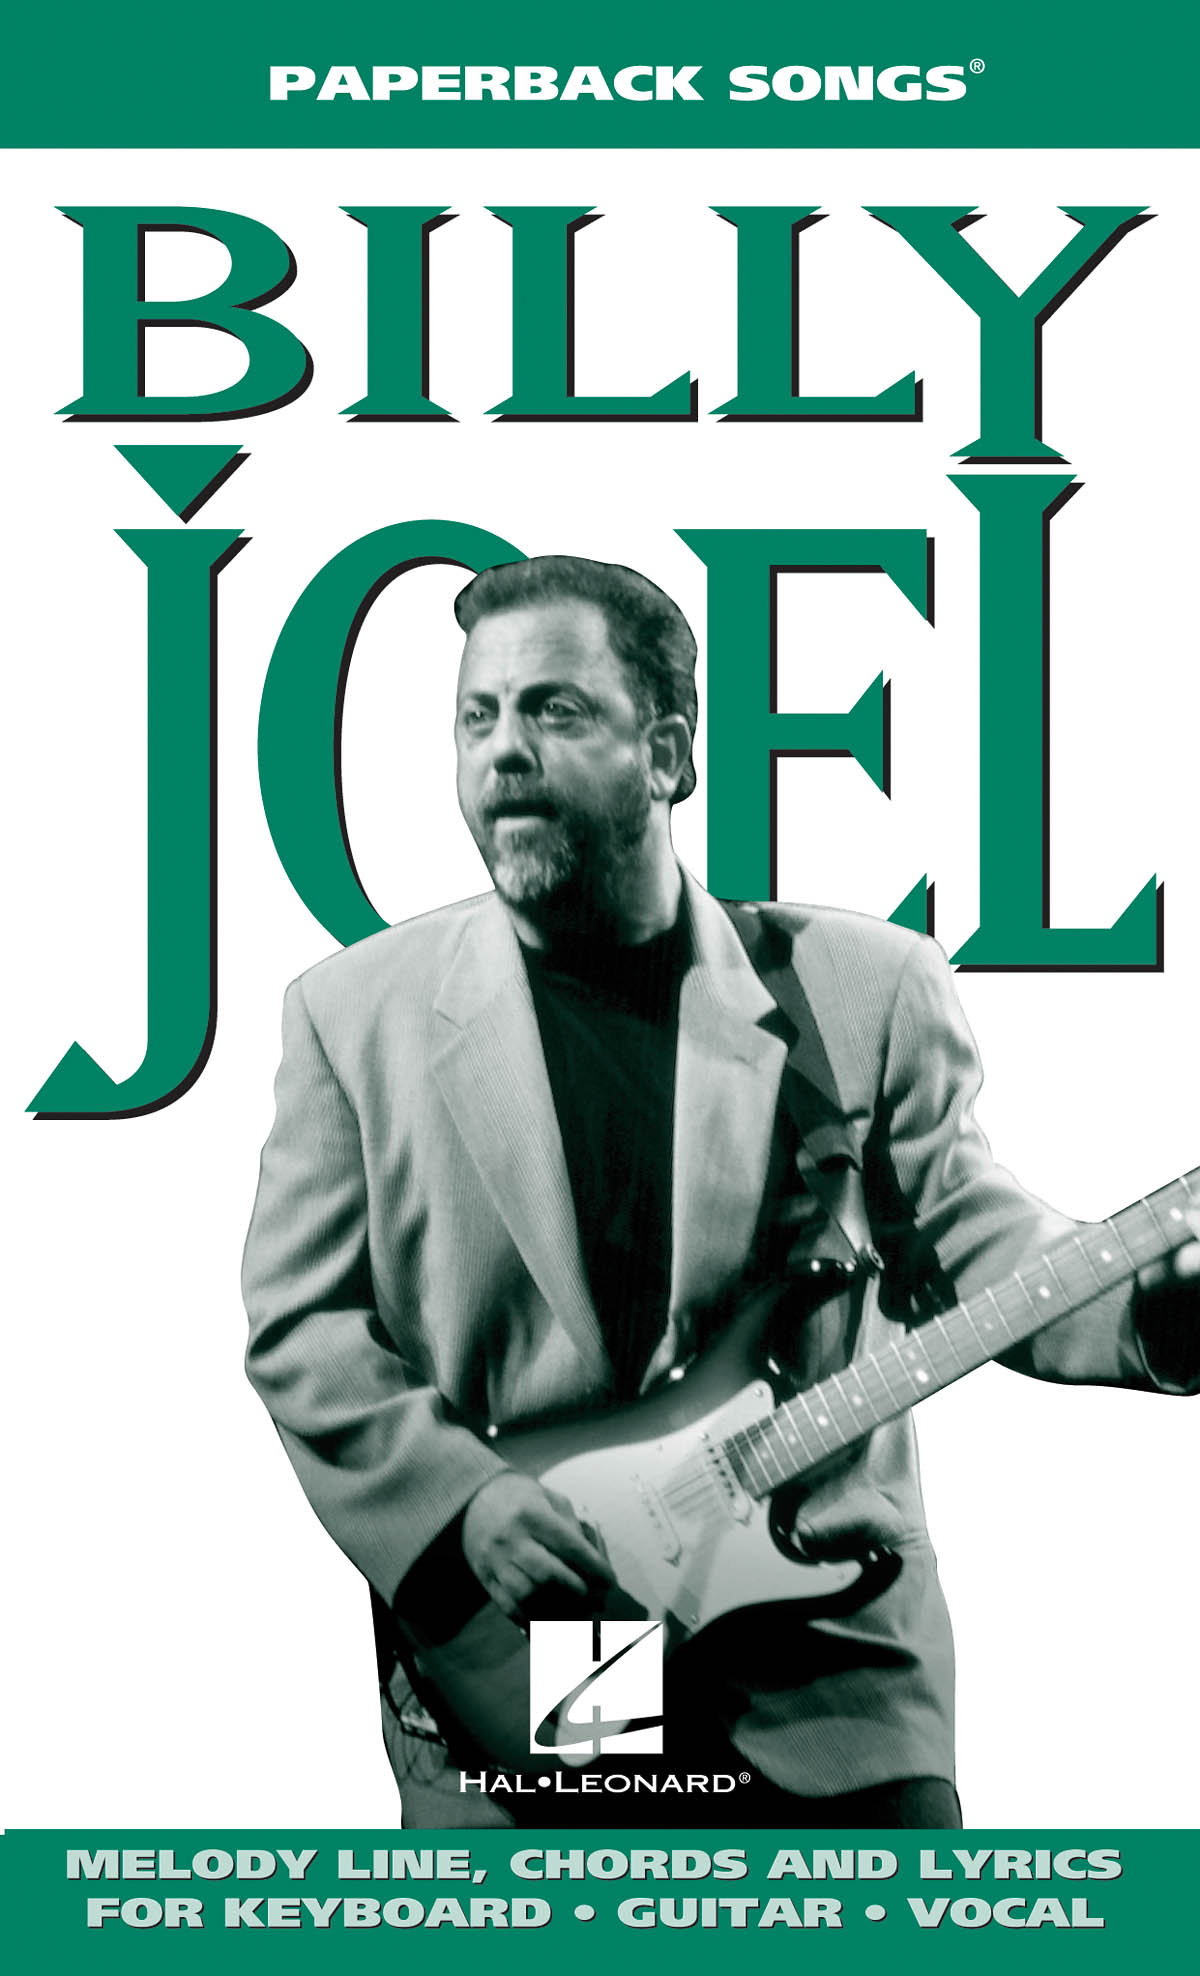 Paperback Songs Billy Joel